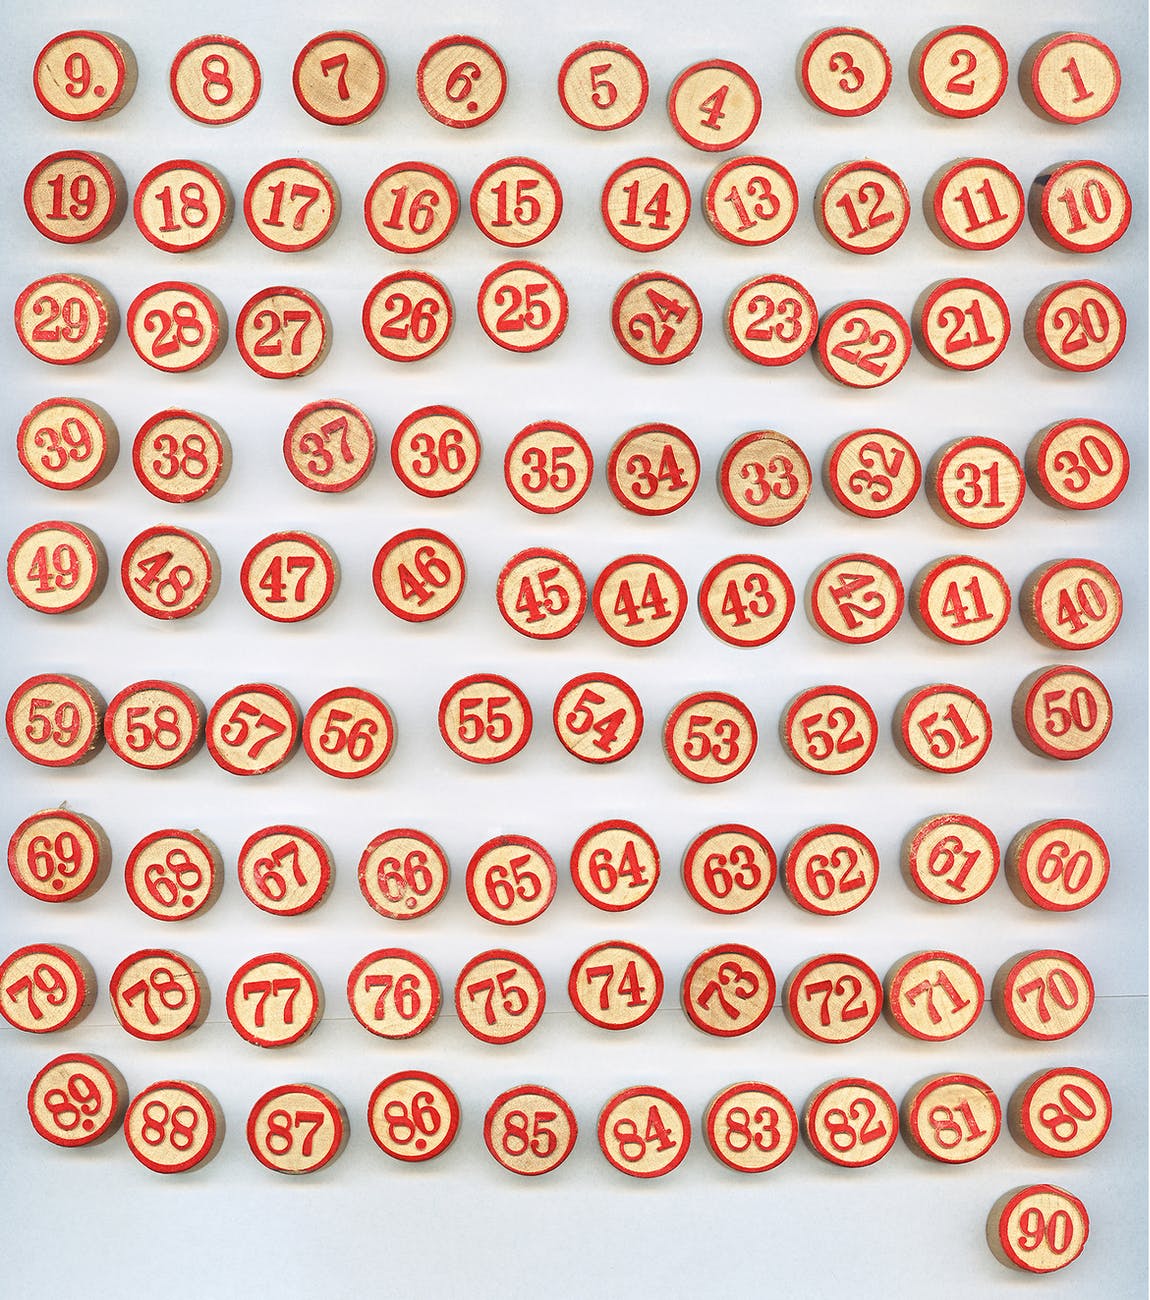 number of bingo chips